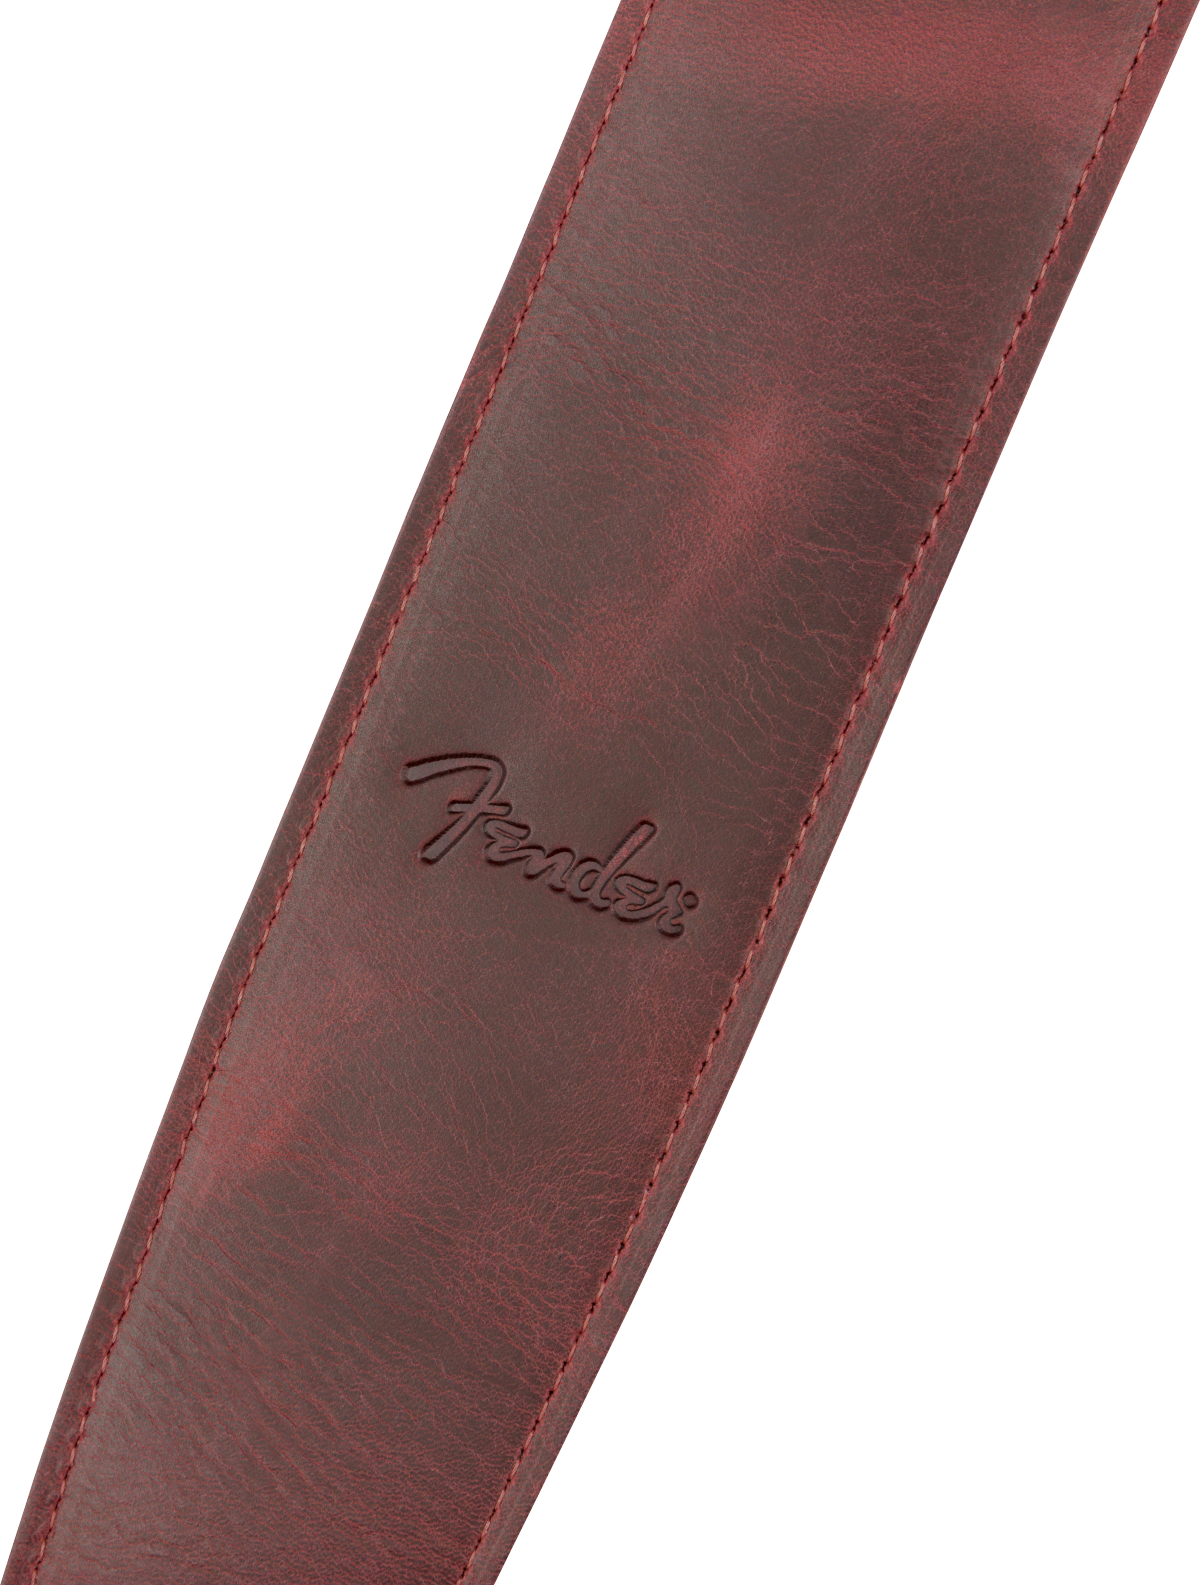 Fender Limited Leather Strap, Laurel Tan